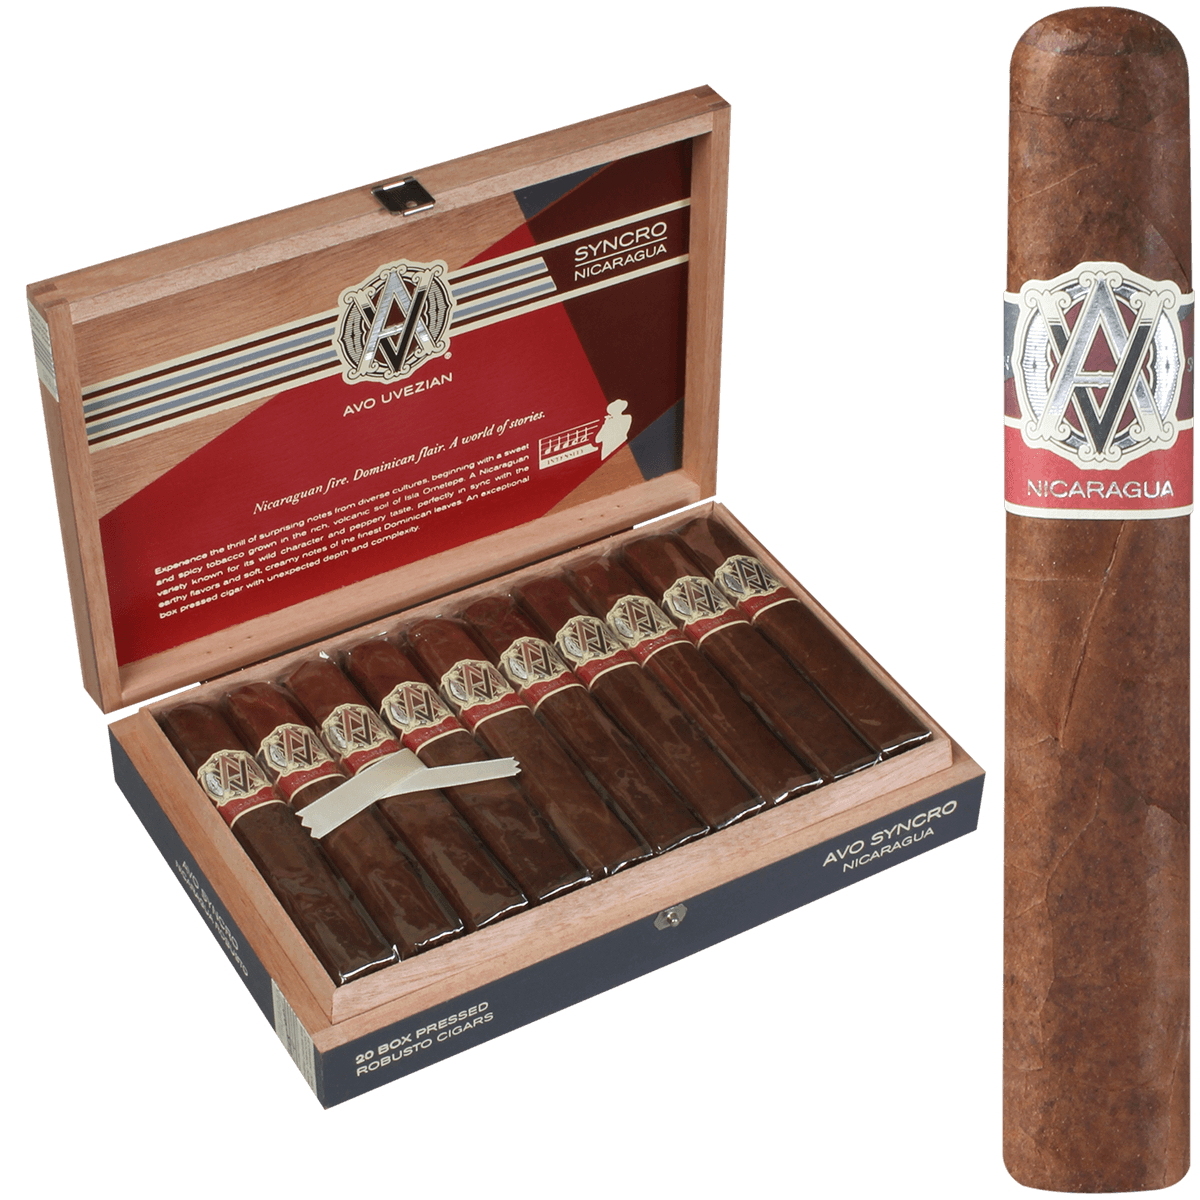 AVO Cigars Syncro Nicaragua Robusto 20 Ct. Box 5.00X50